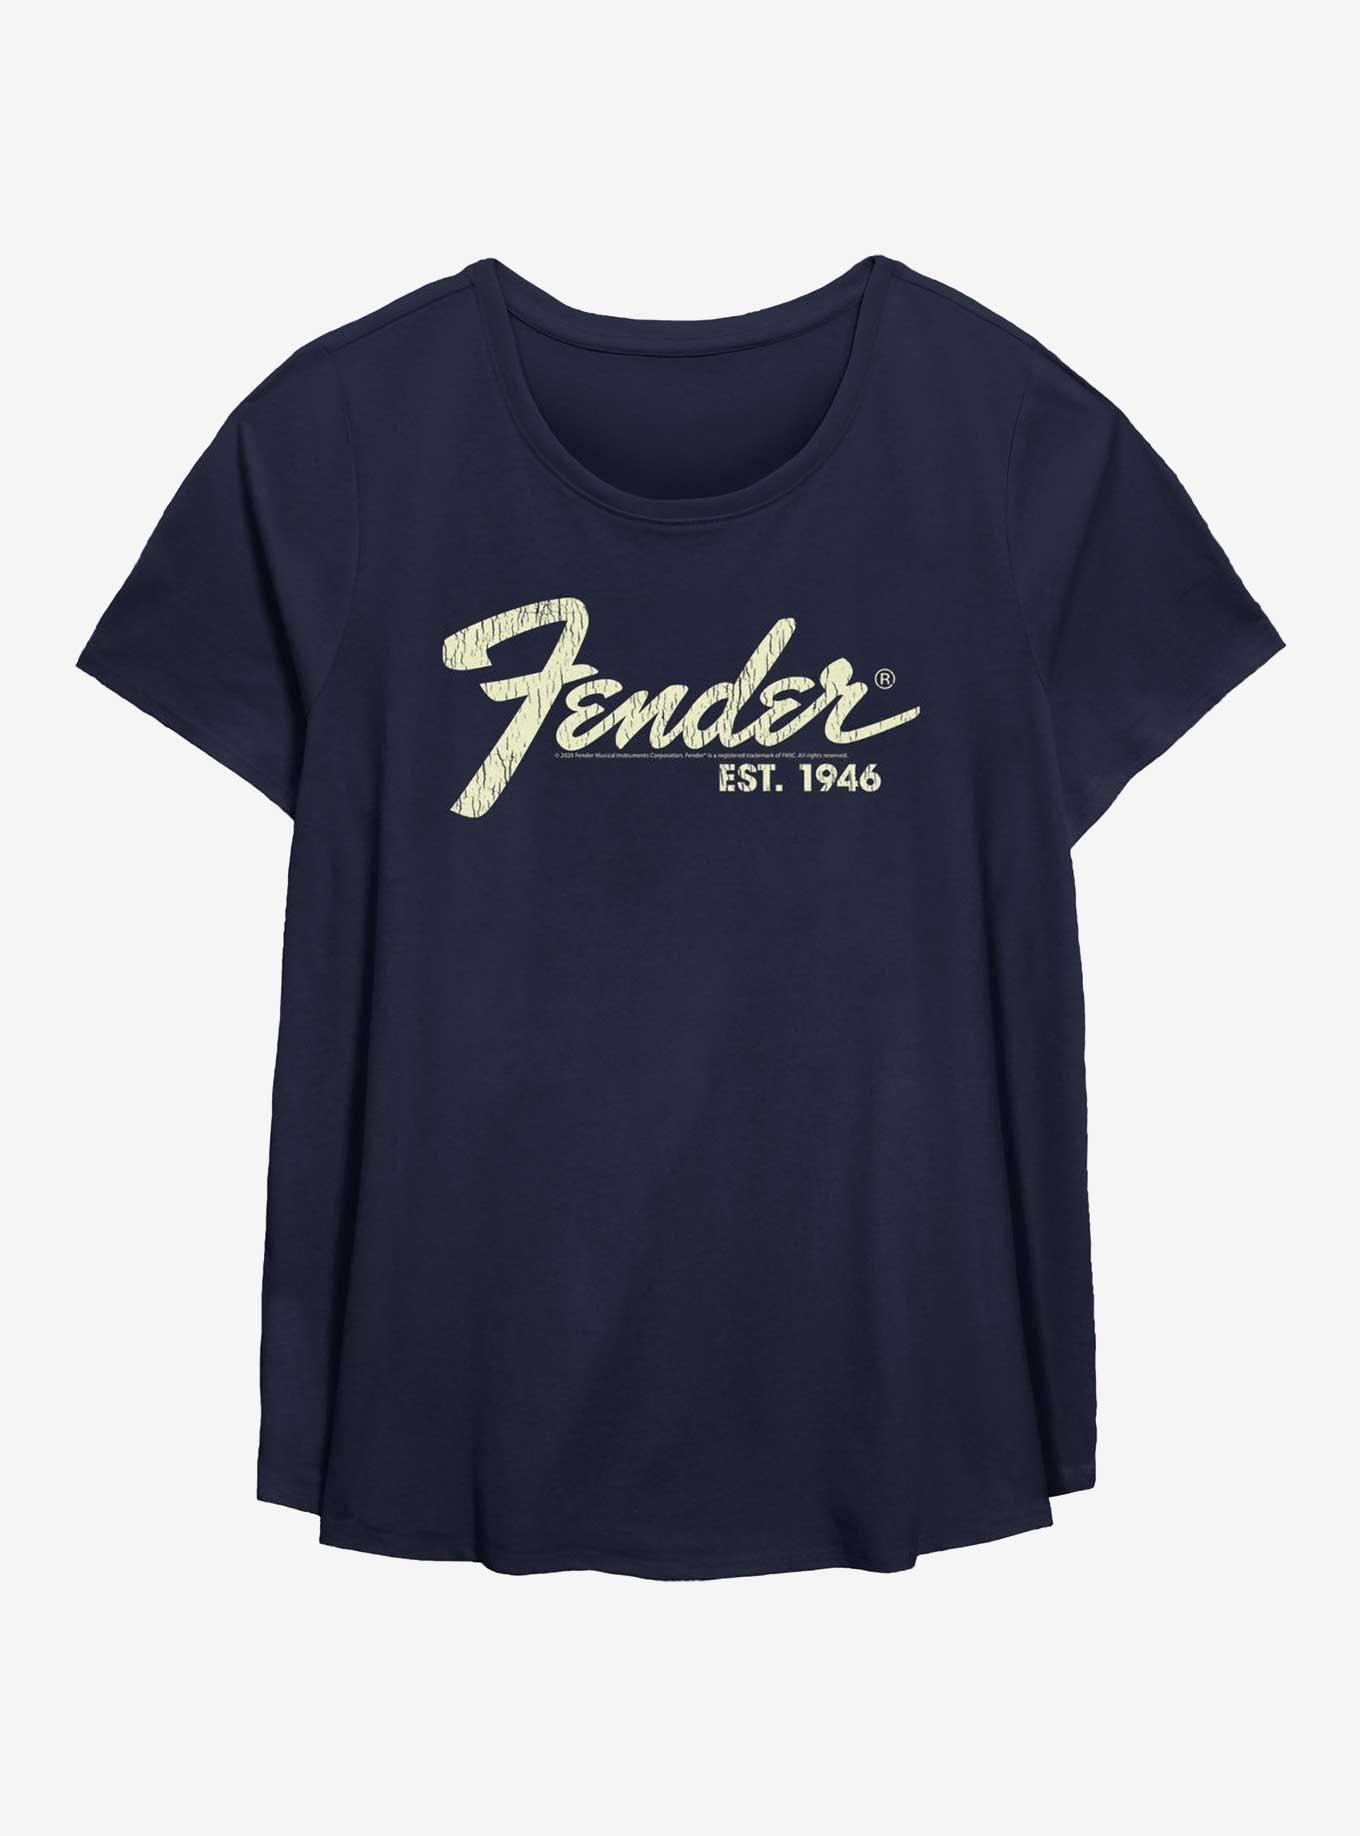 Fender Est. 1946 Womens T-Shirt Plus Size, NAVY, hi-res